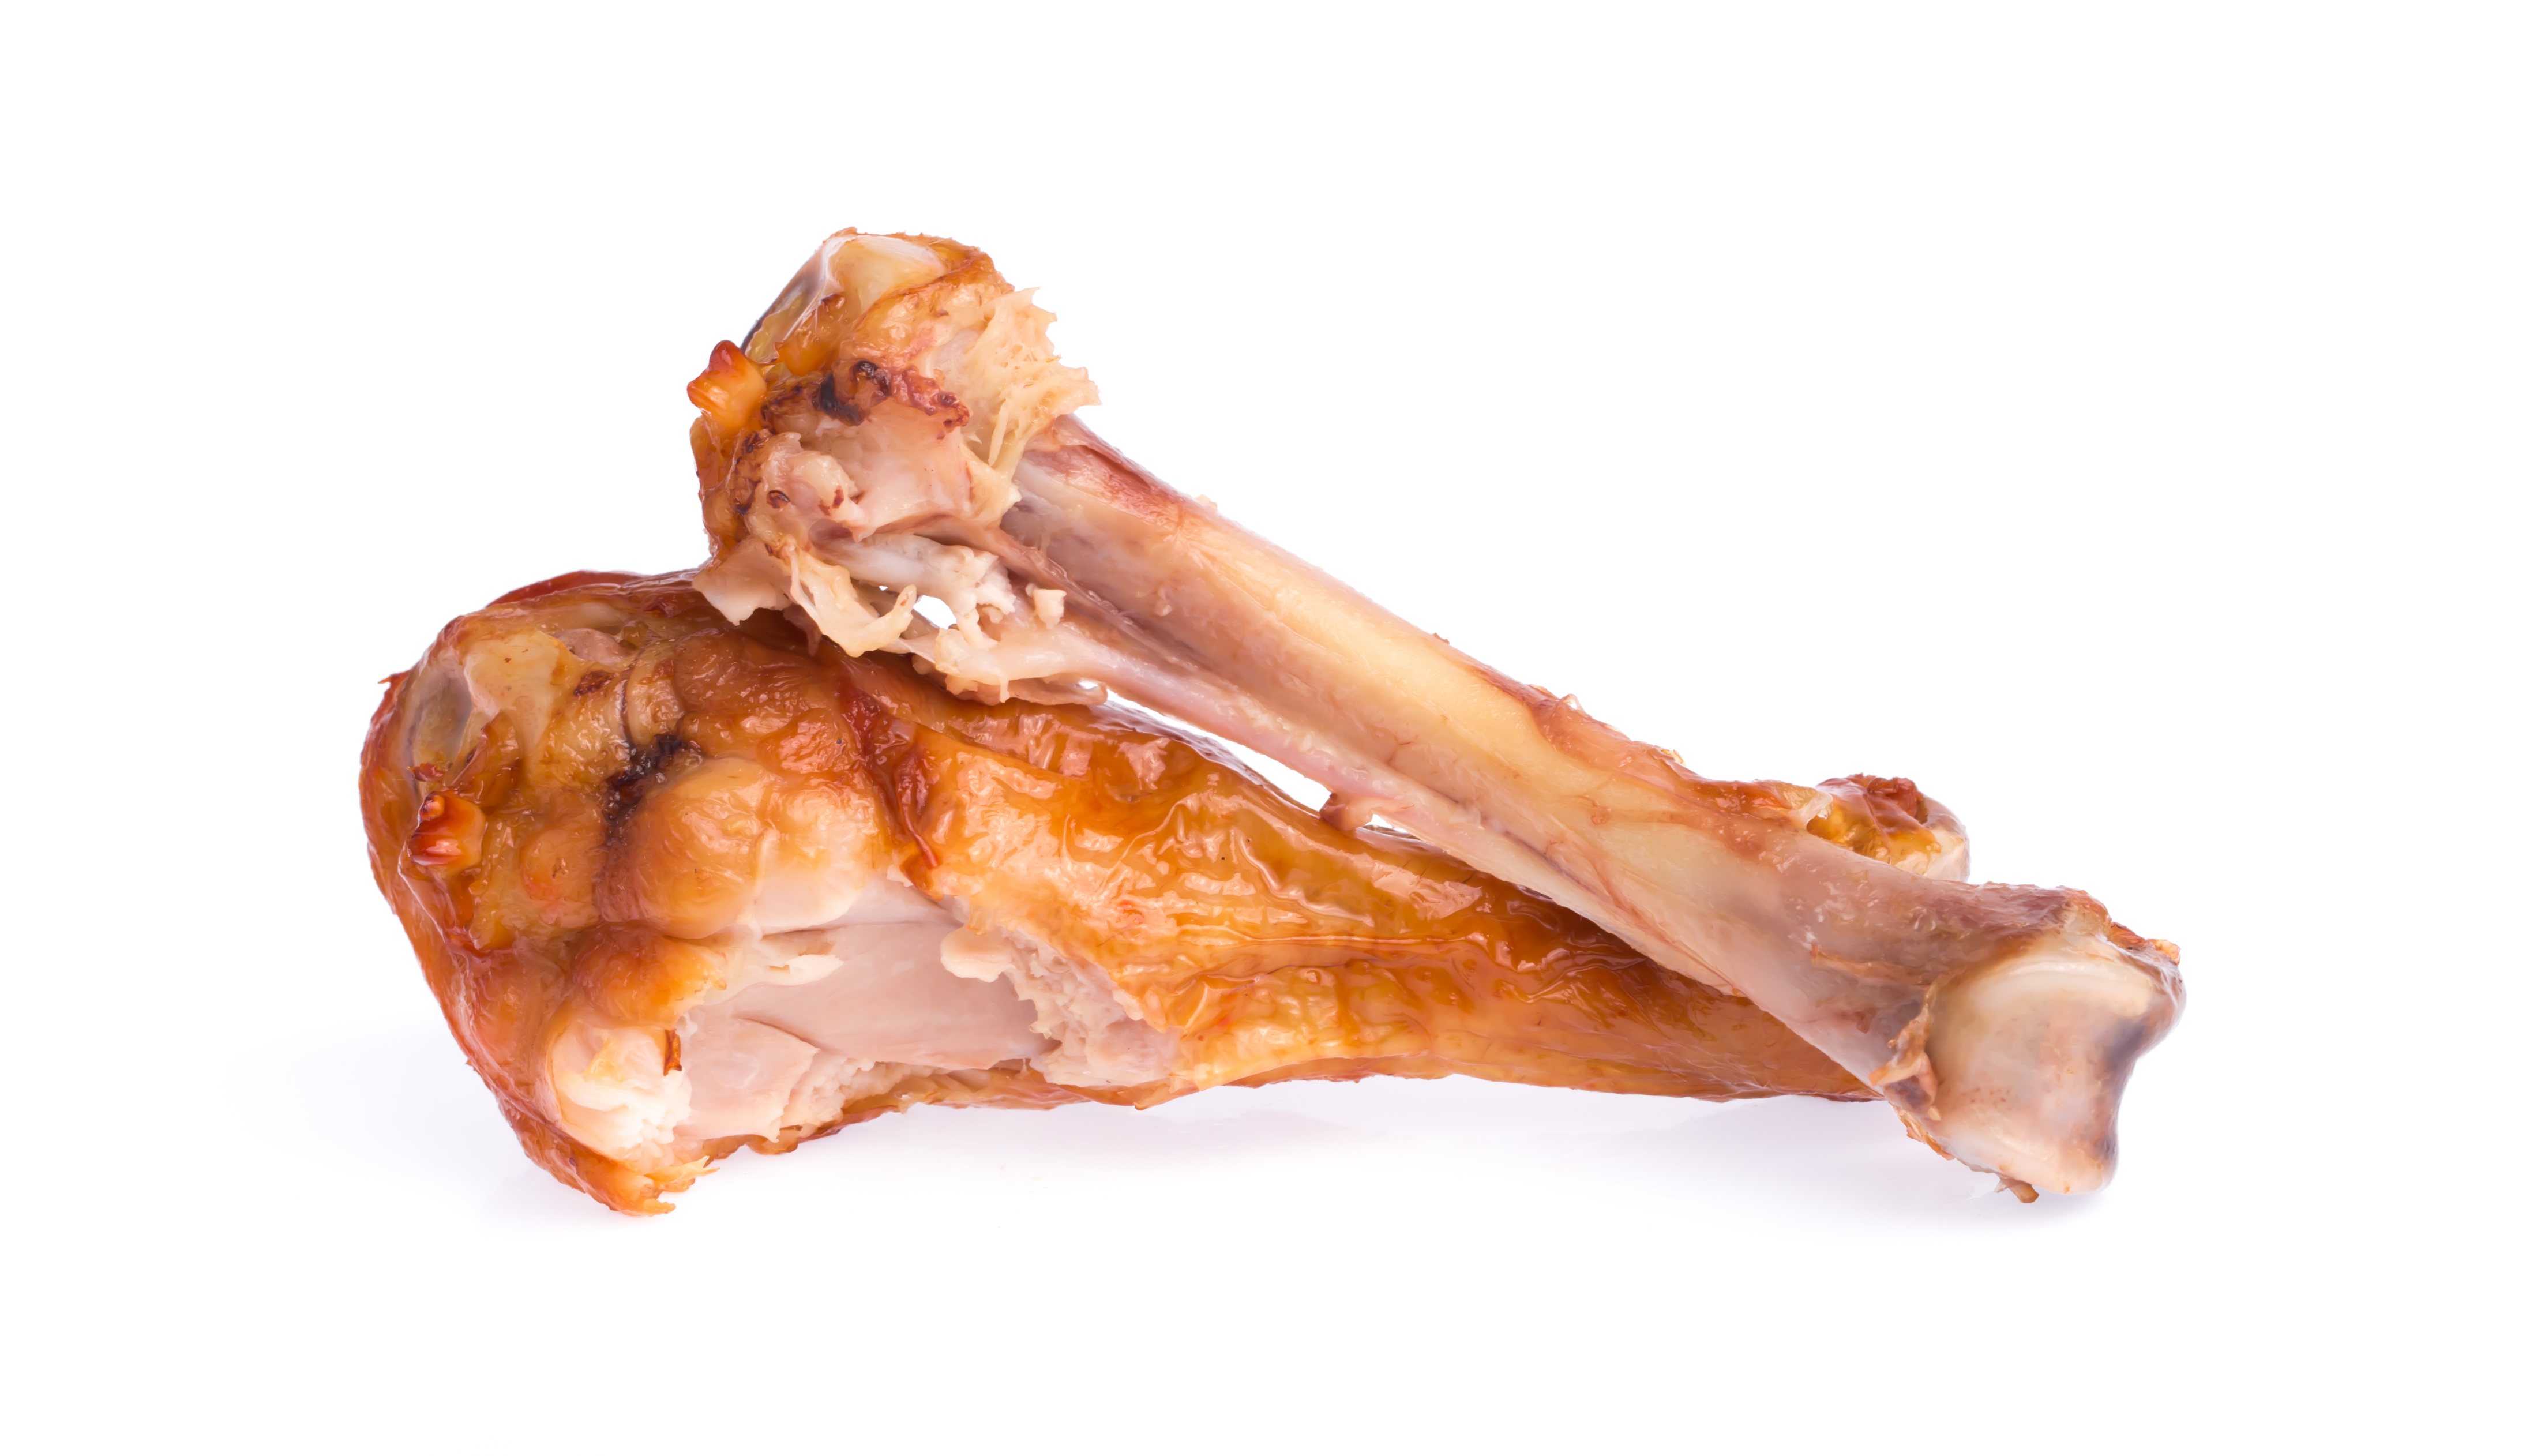 bone of Roasted chicken leg isolated on white background